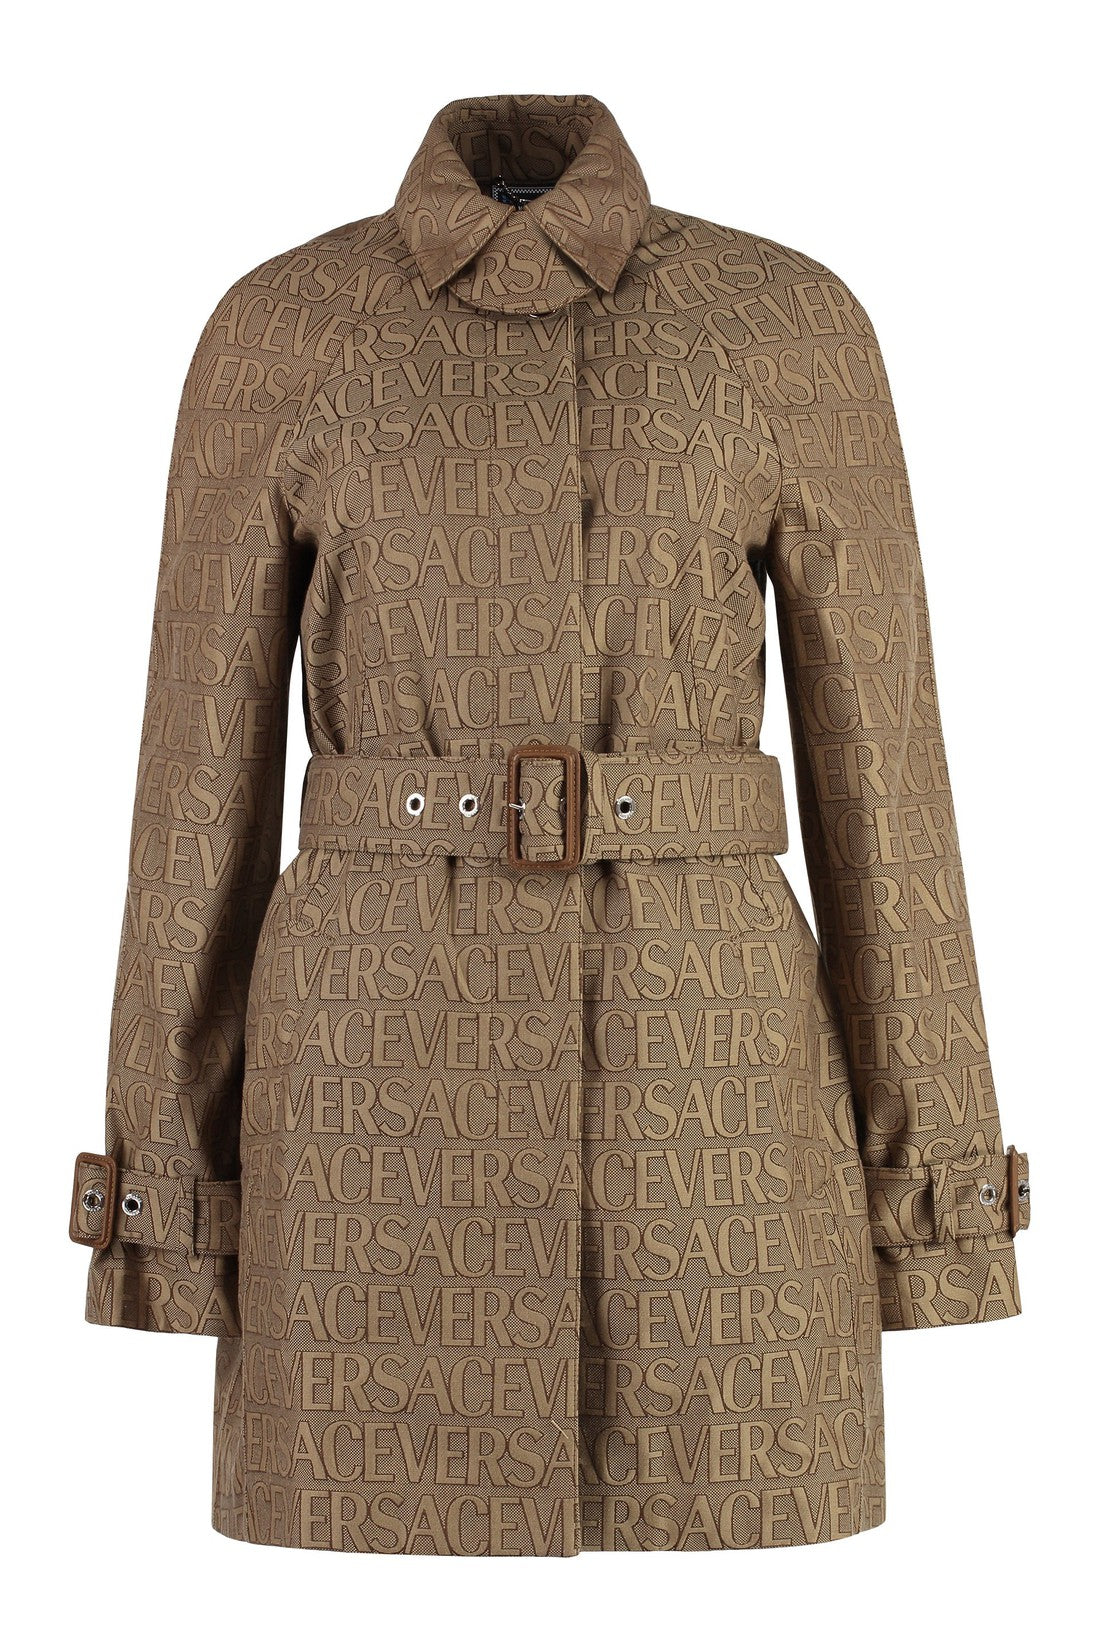 Versace-OUTLET-SALE-Cotton trench coat-ARCHIVIST